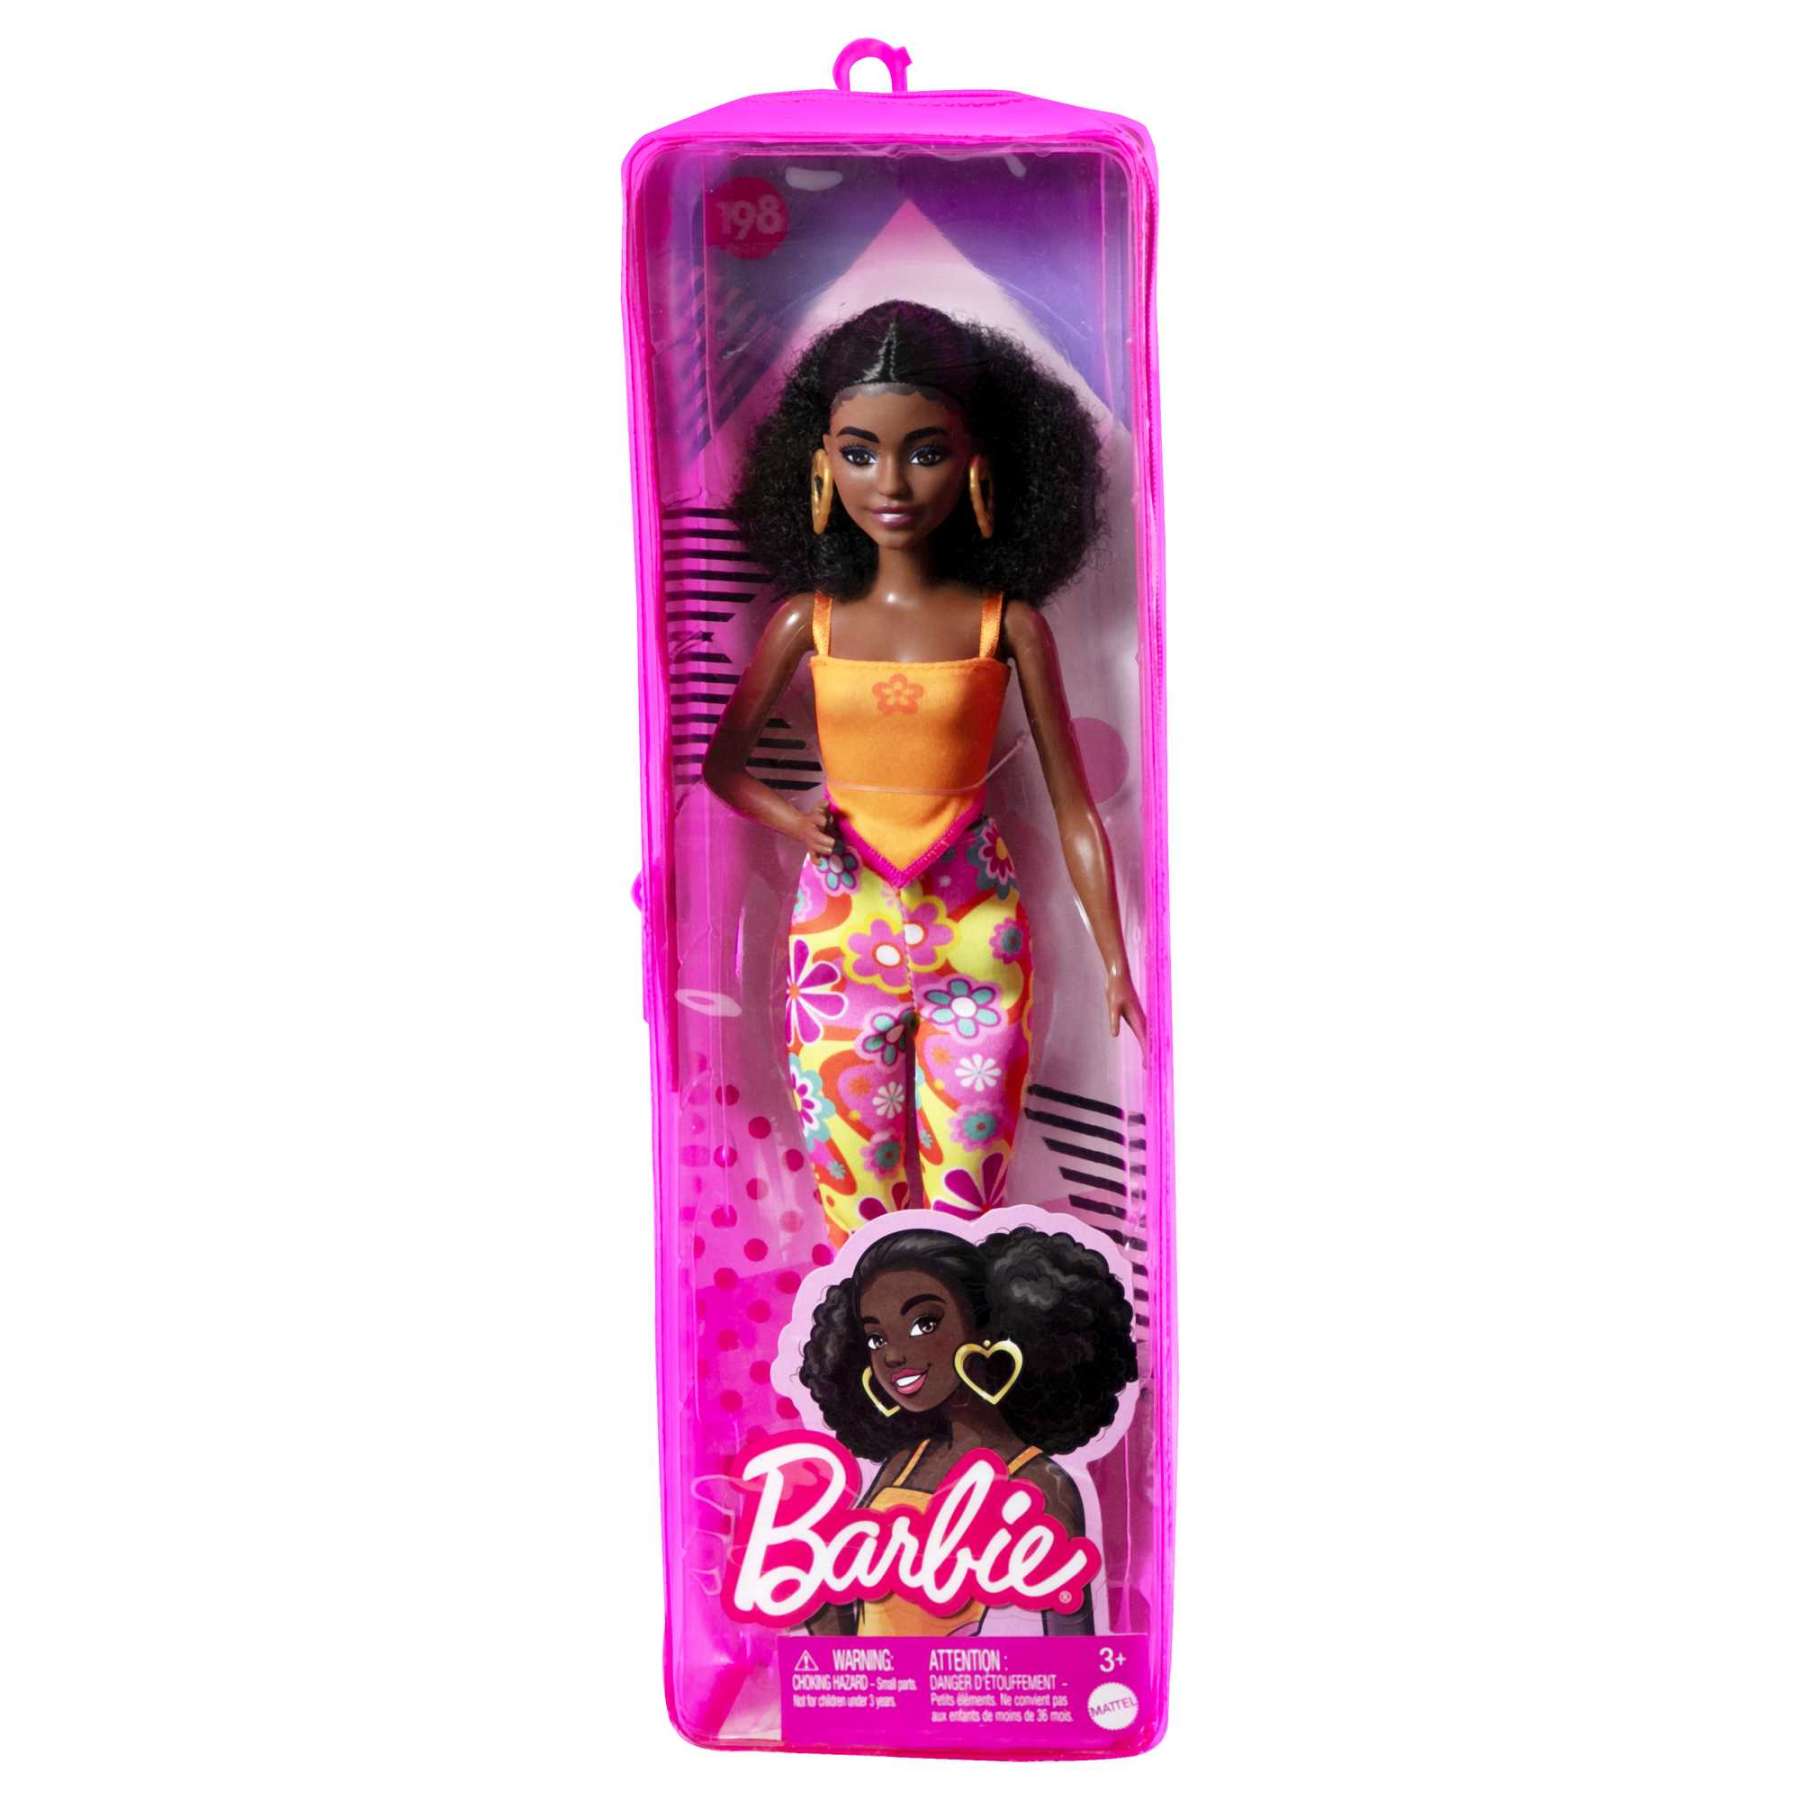 Barbie Fashionesta Doll Ast